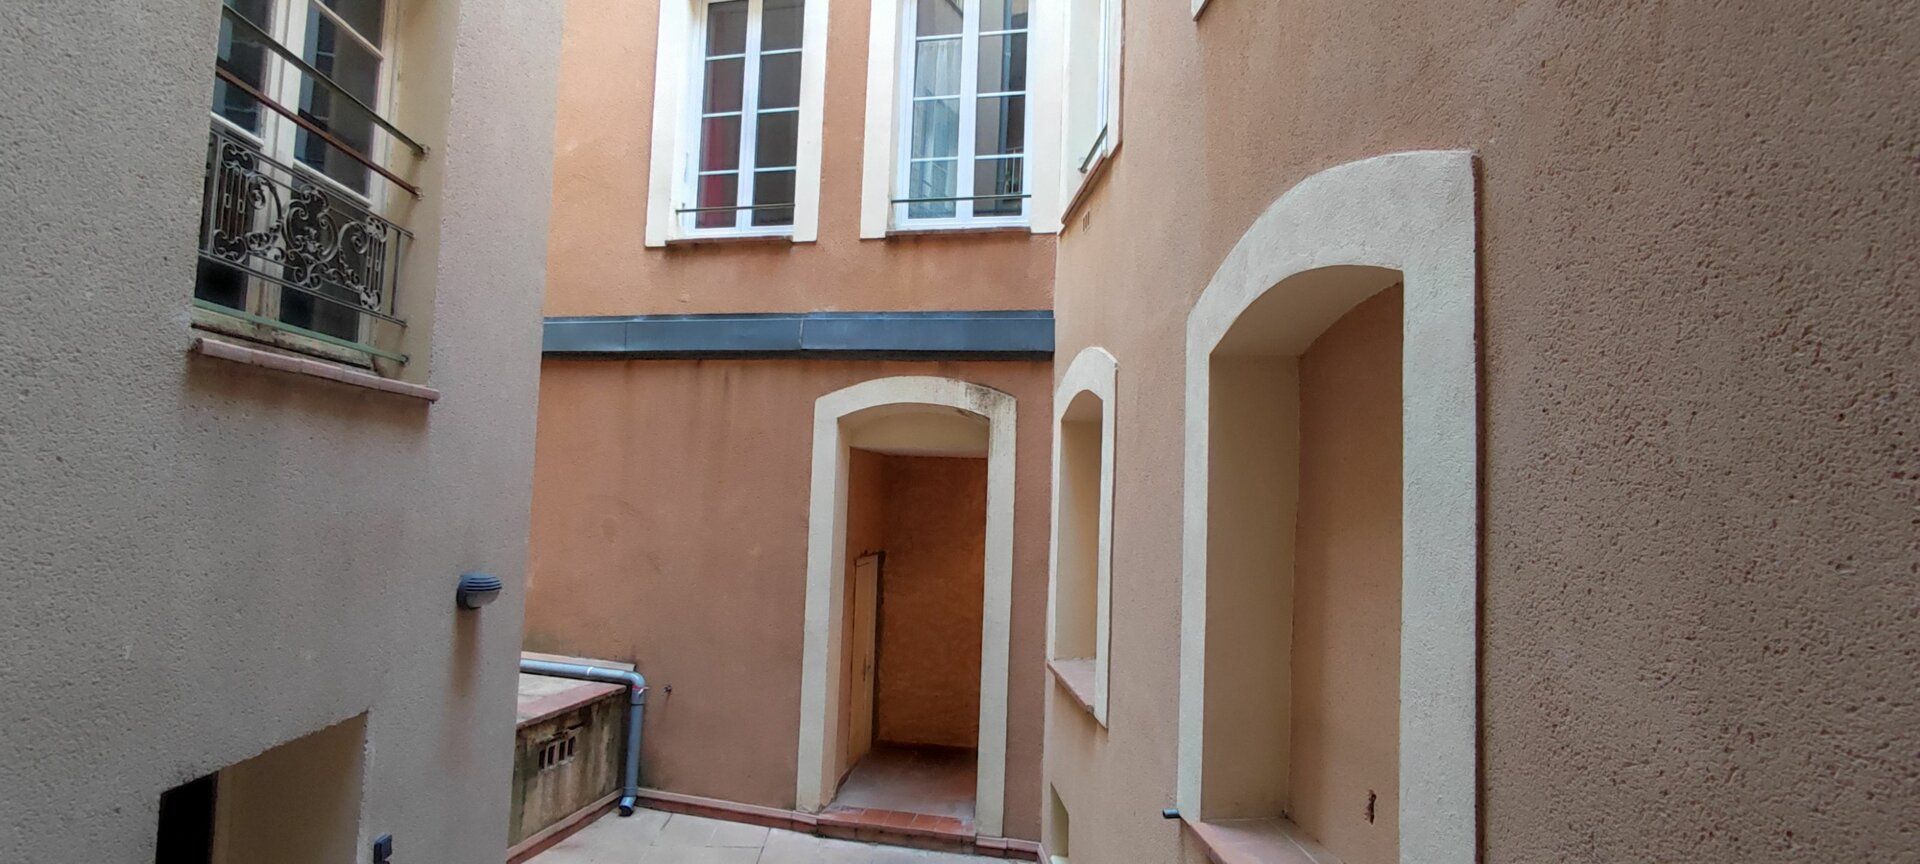 Appartement à vendre 1 52m2 à Nîmes vignette-4